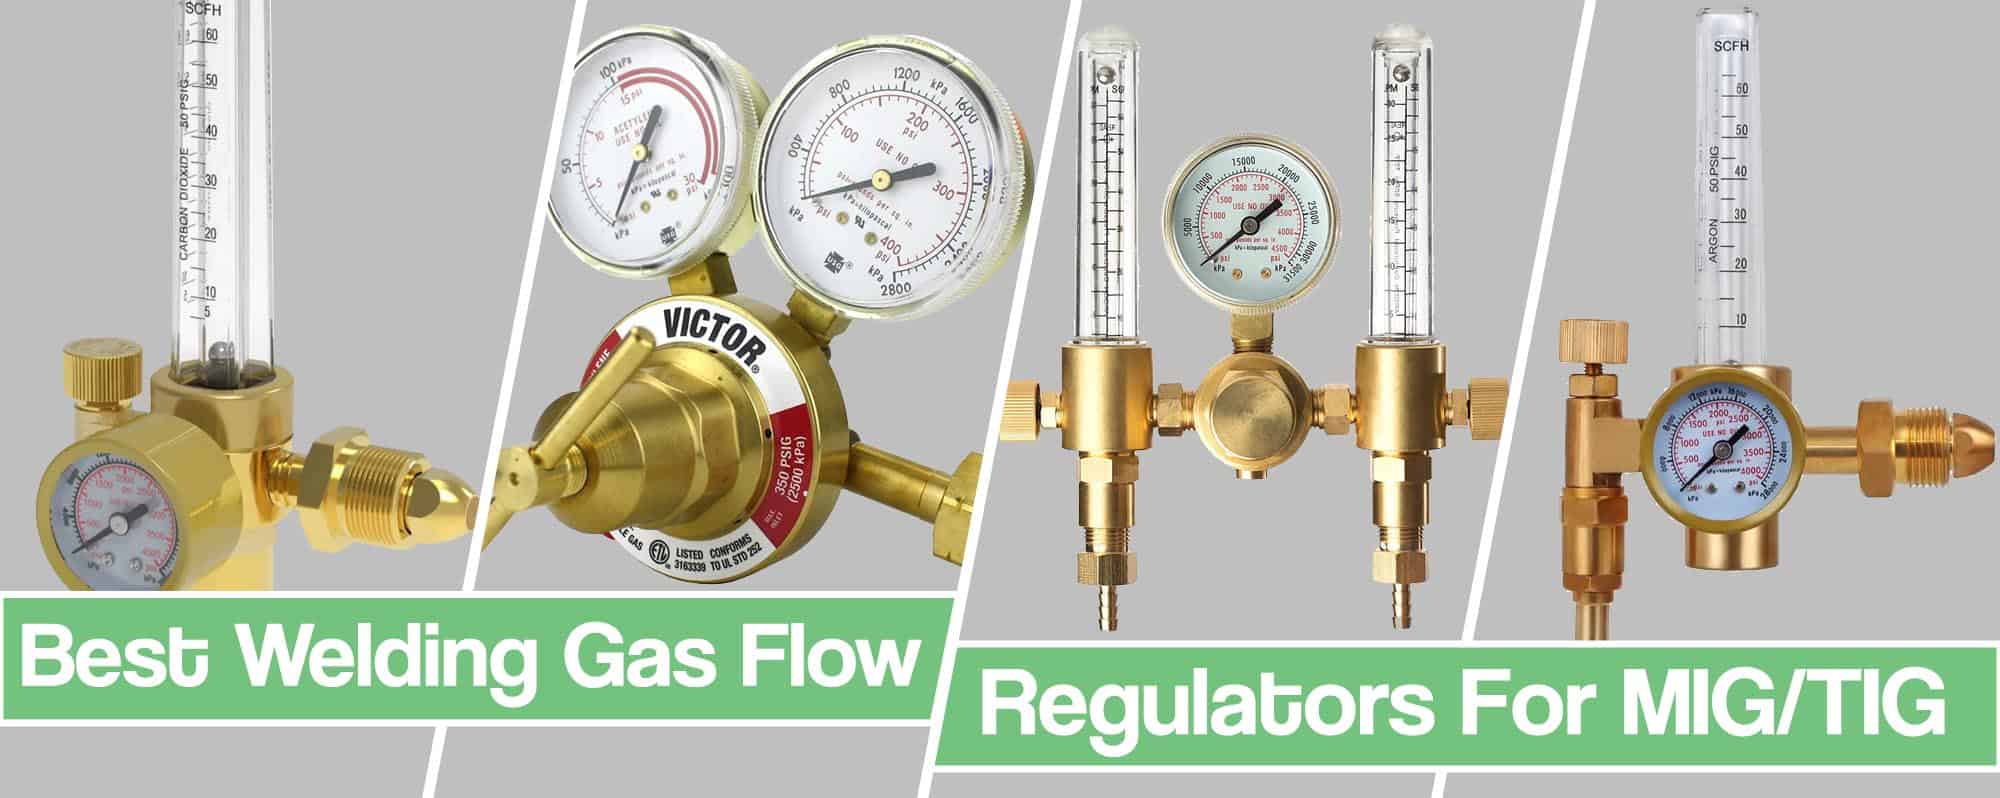 flow meter vs regulator